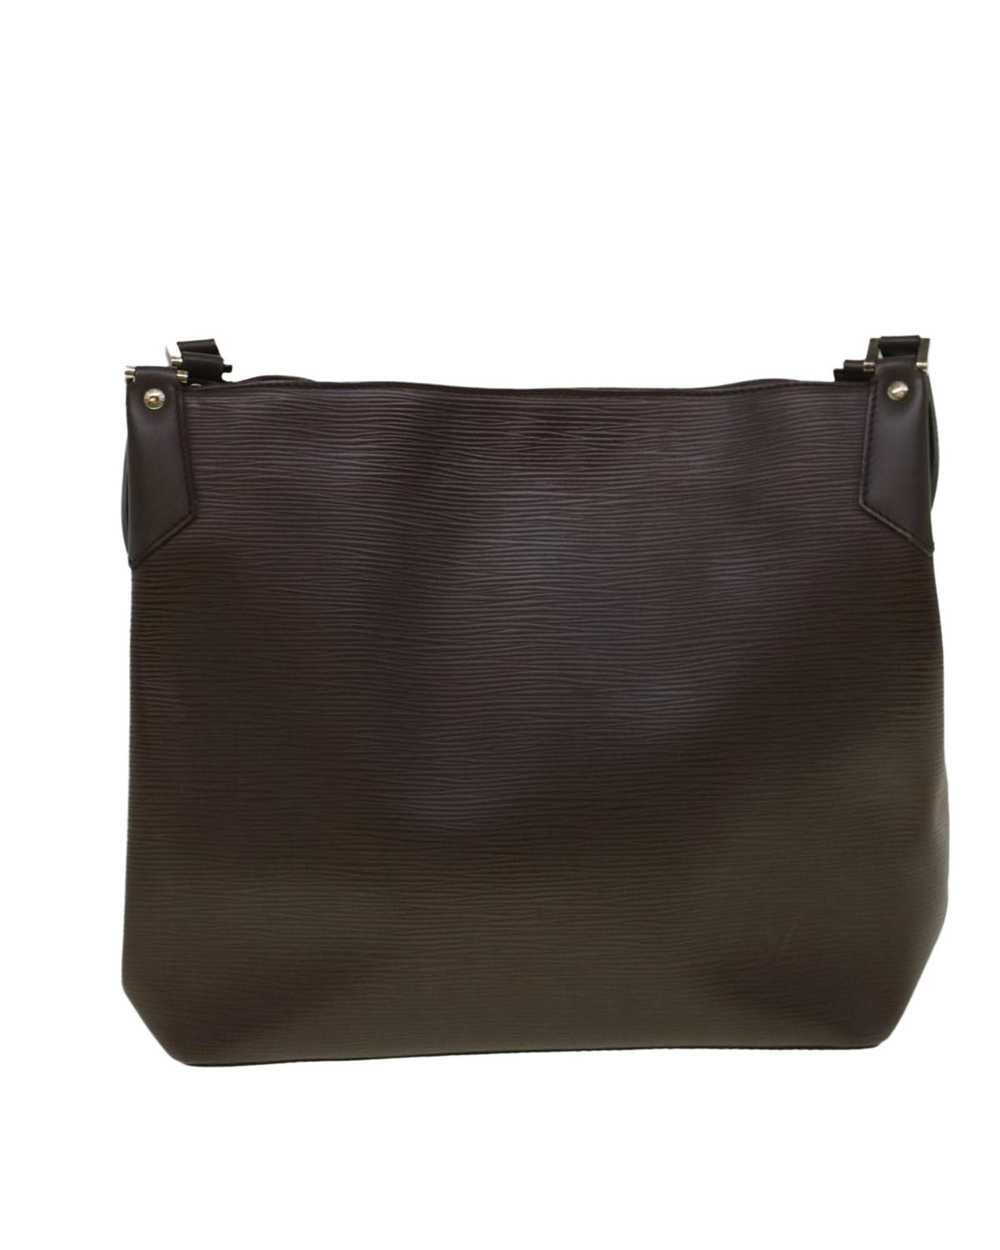 Louis Vuitton Elegant Epi Leather Shoulder Bag - image 2